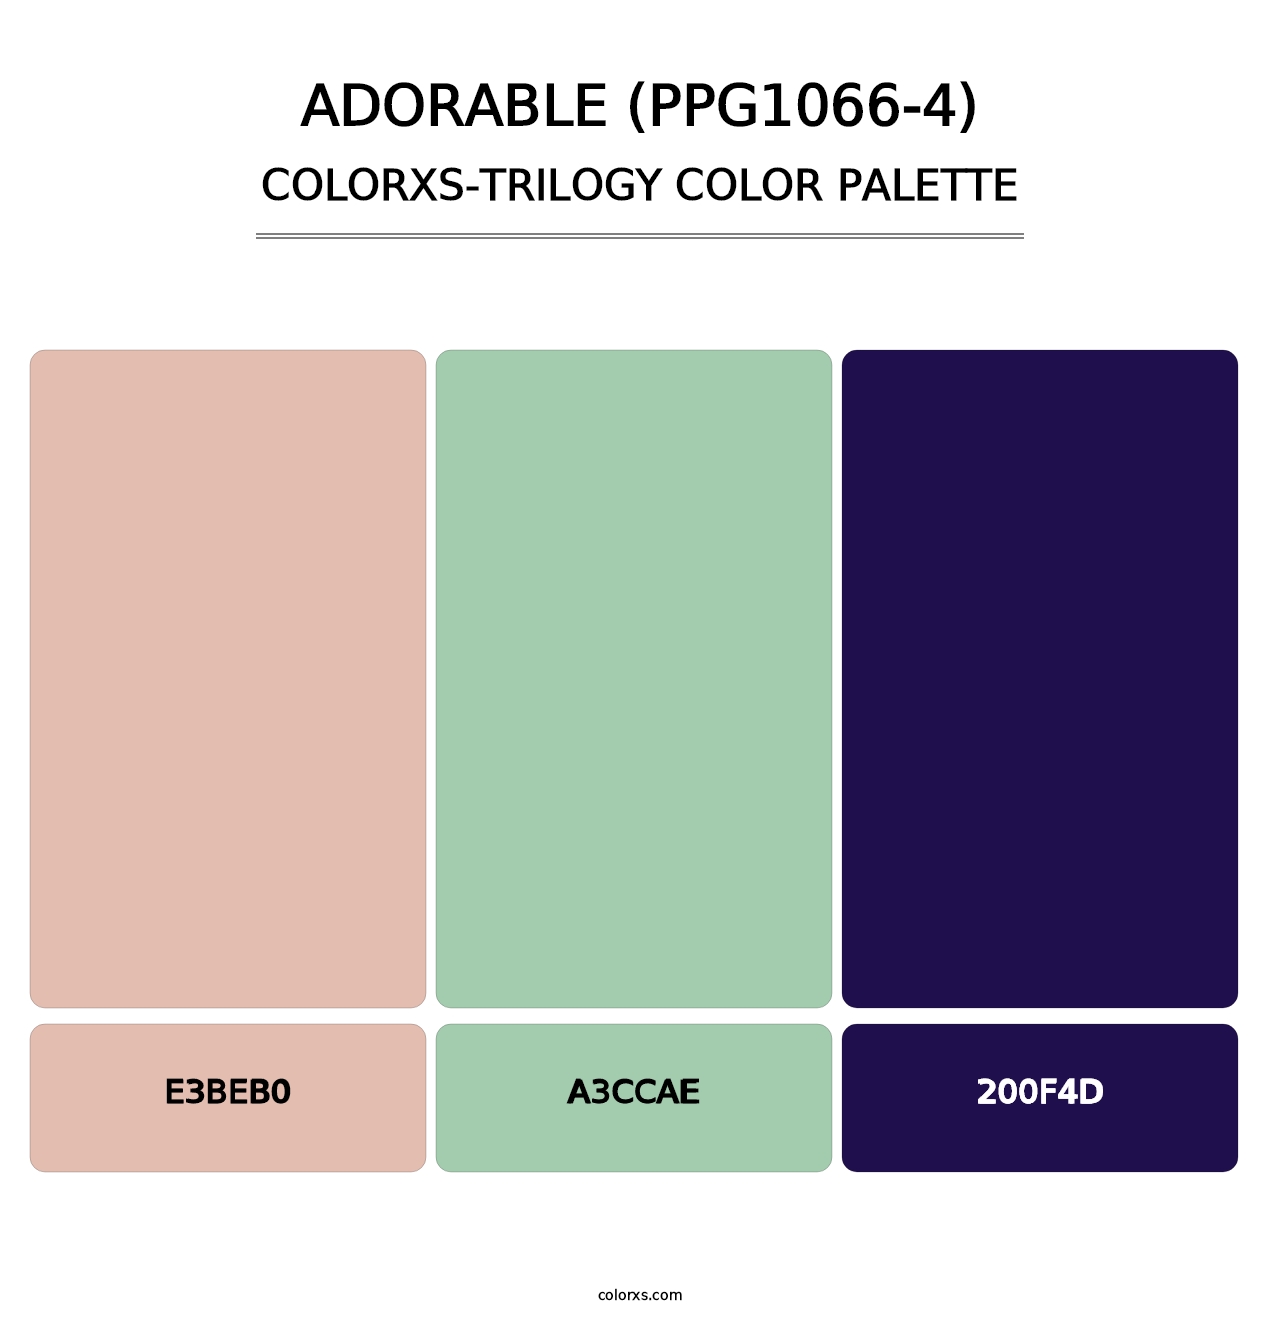 Adorable (PPG1066-4) - Colorxs Trilogy Palette